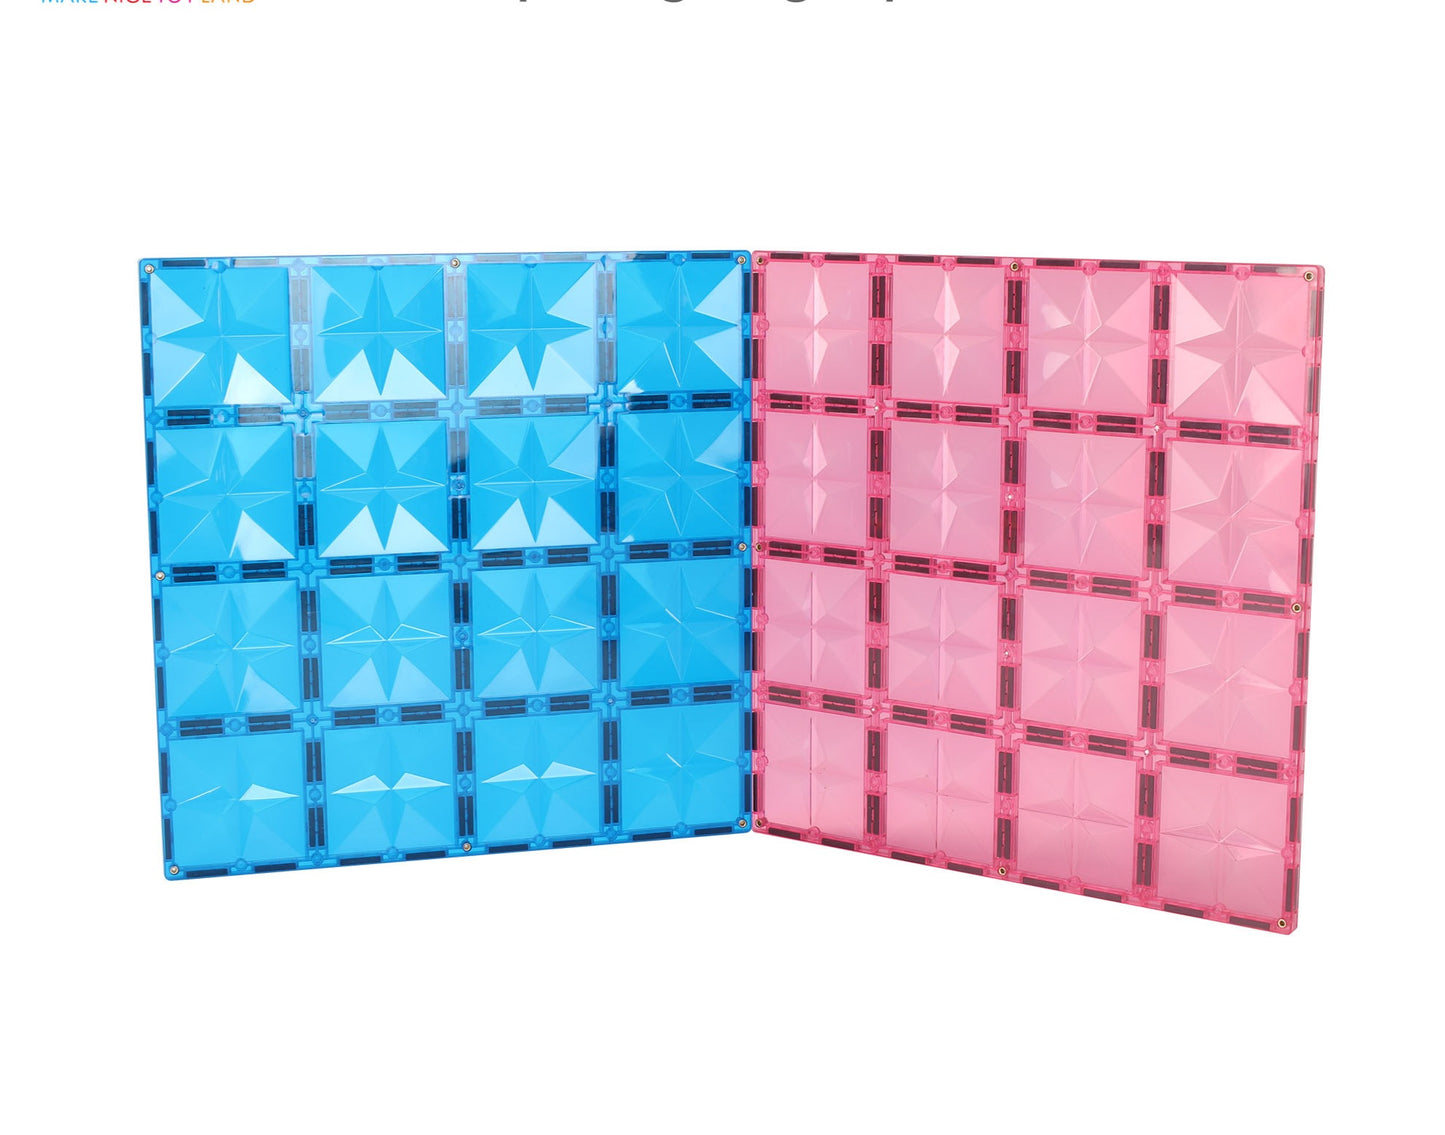 MNTL Magnetic Tile Base Plates (pink+blue)